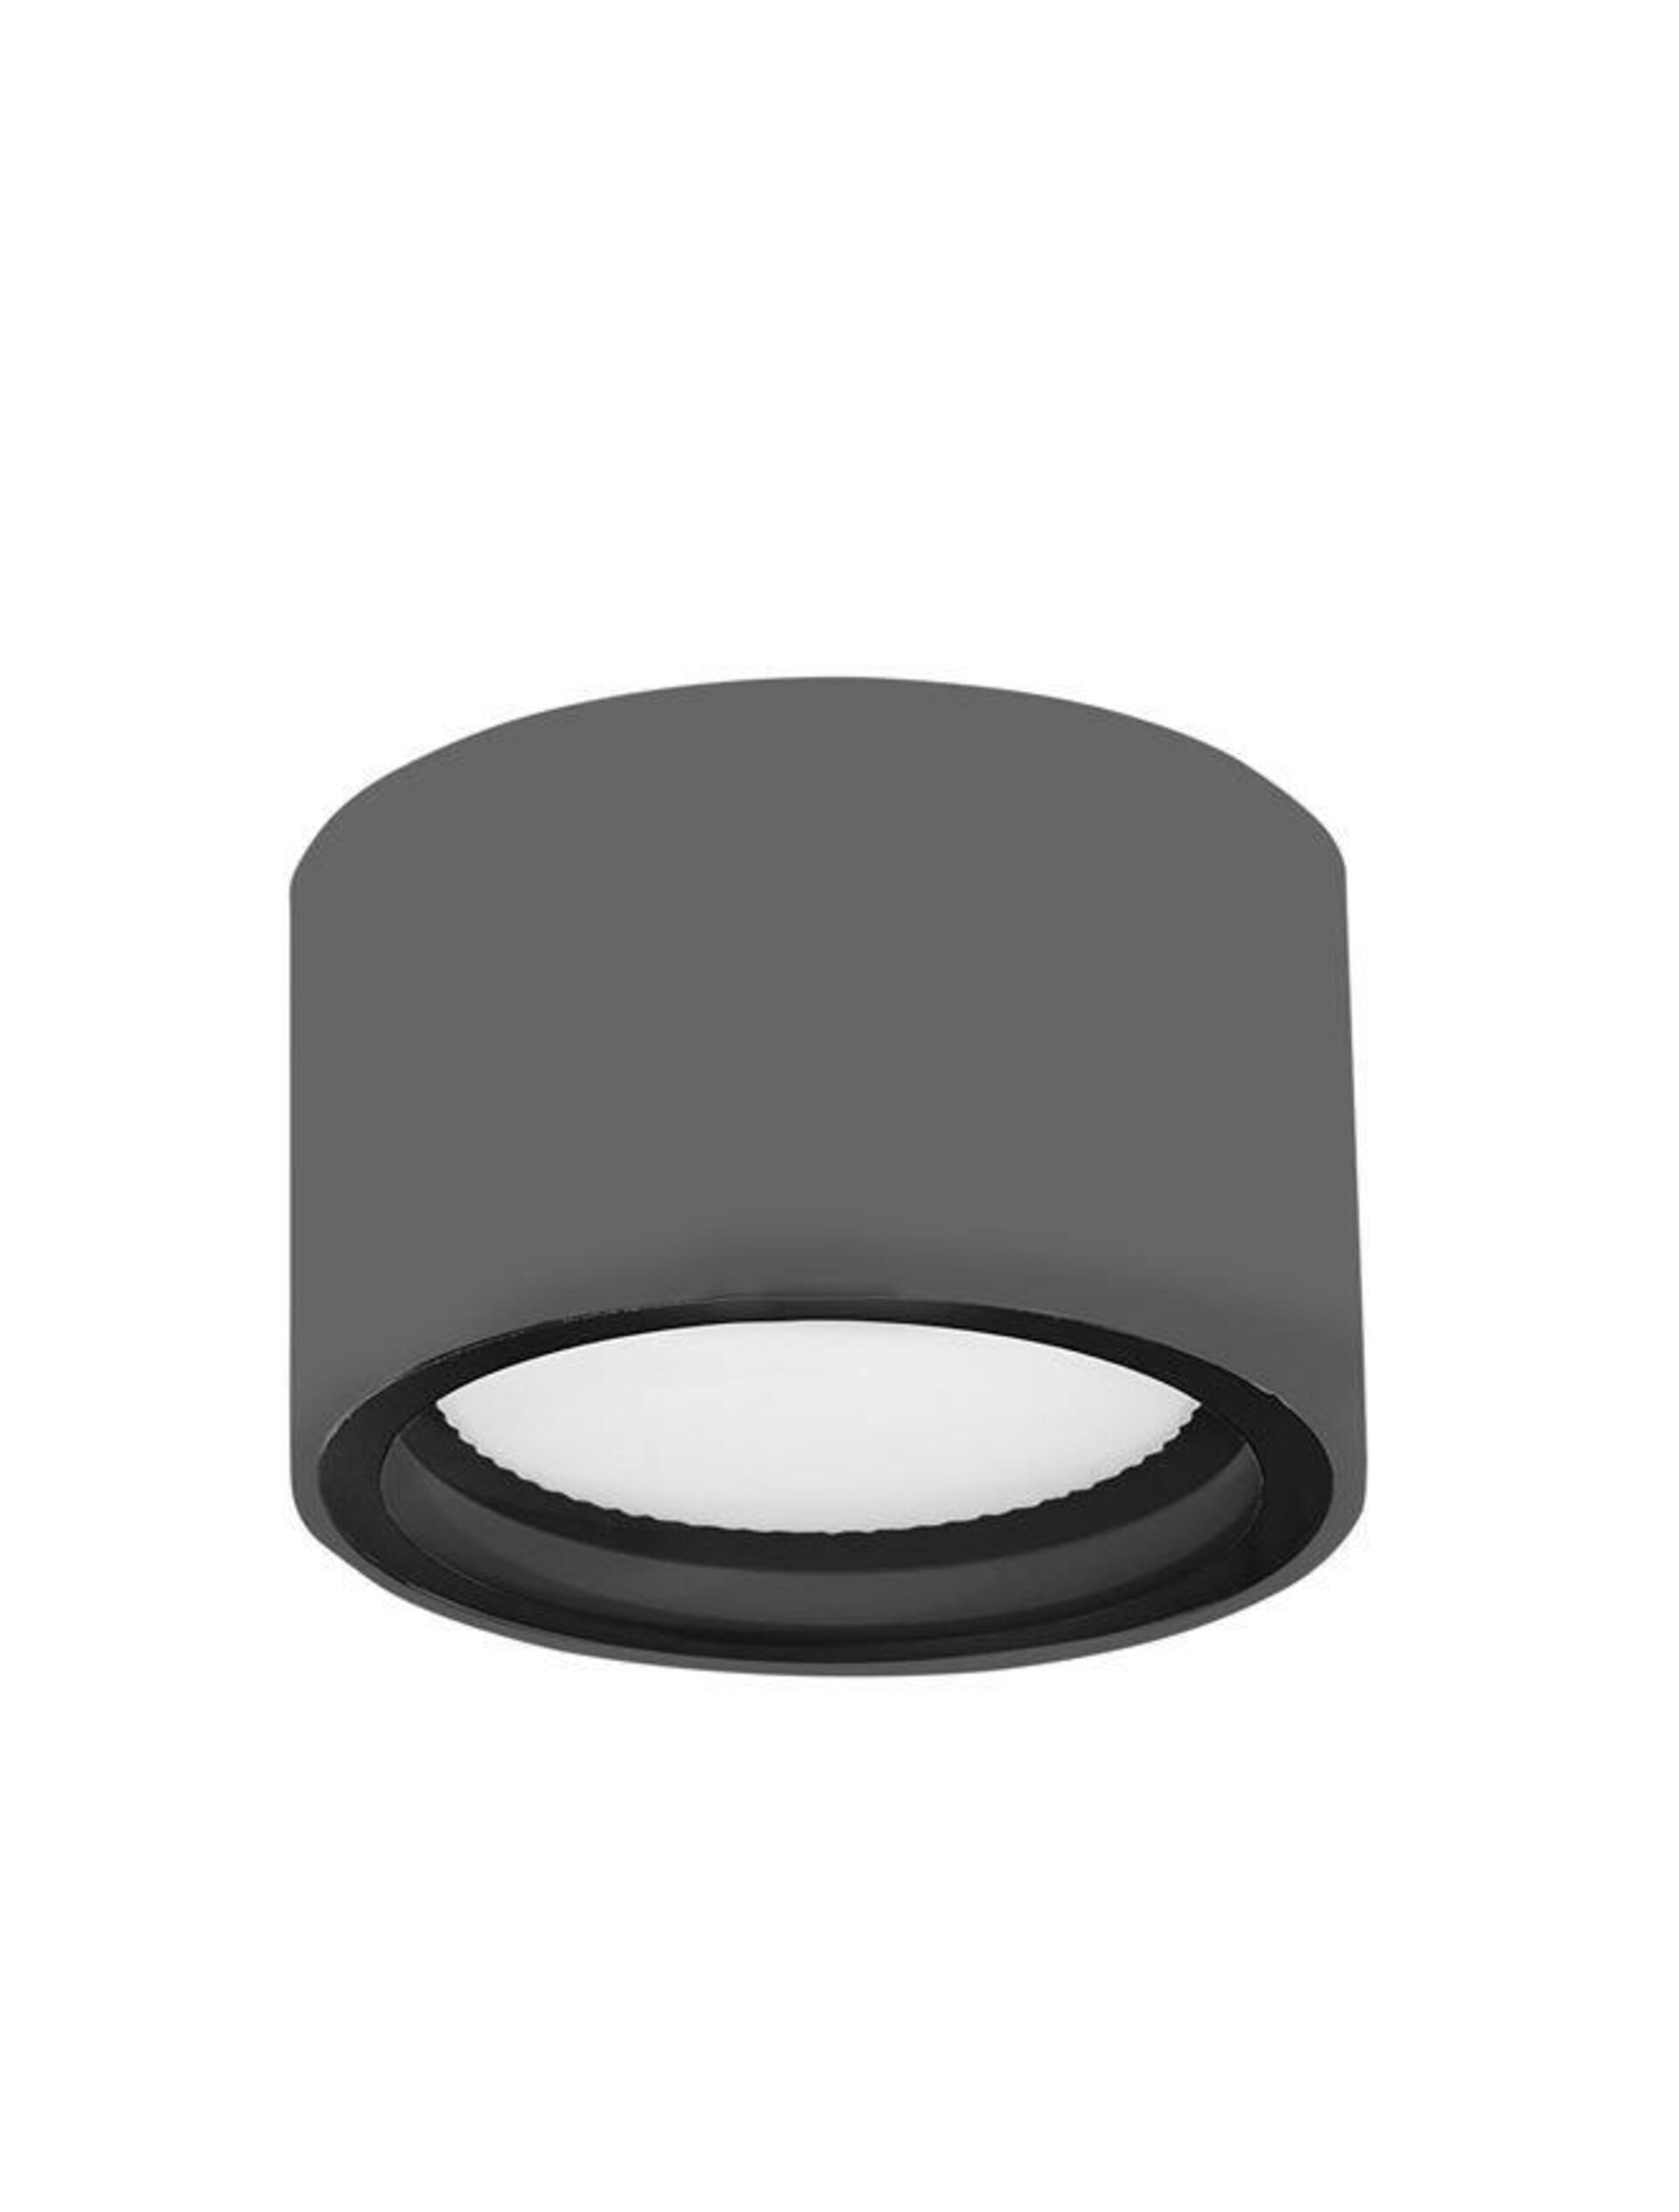 NOVA LUCE venkovní stropní svítidlo FOCUS tmavě šedý hliník skleněný difuzor LED GX53 7W 3000K 220-240V 77st. IP54 752463